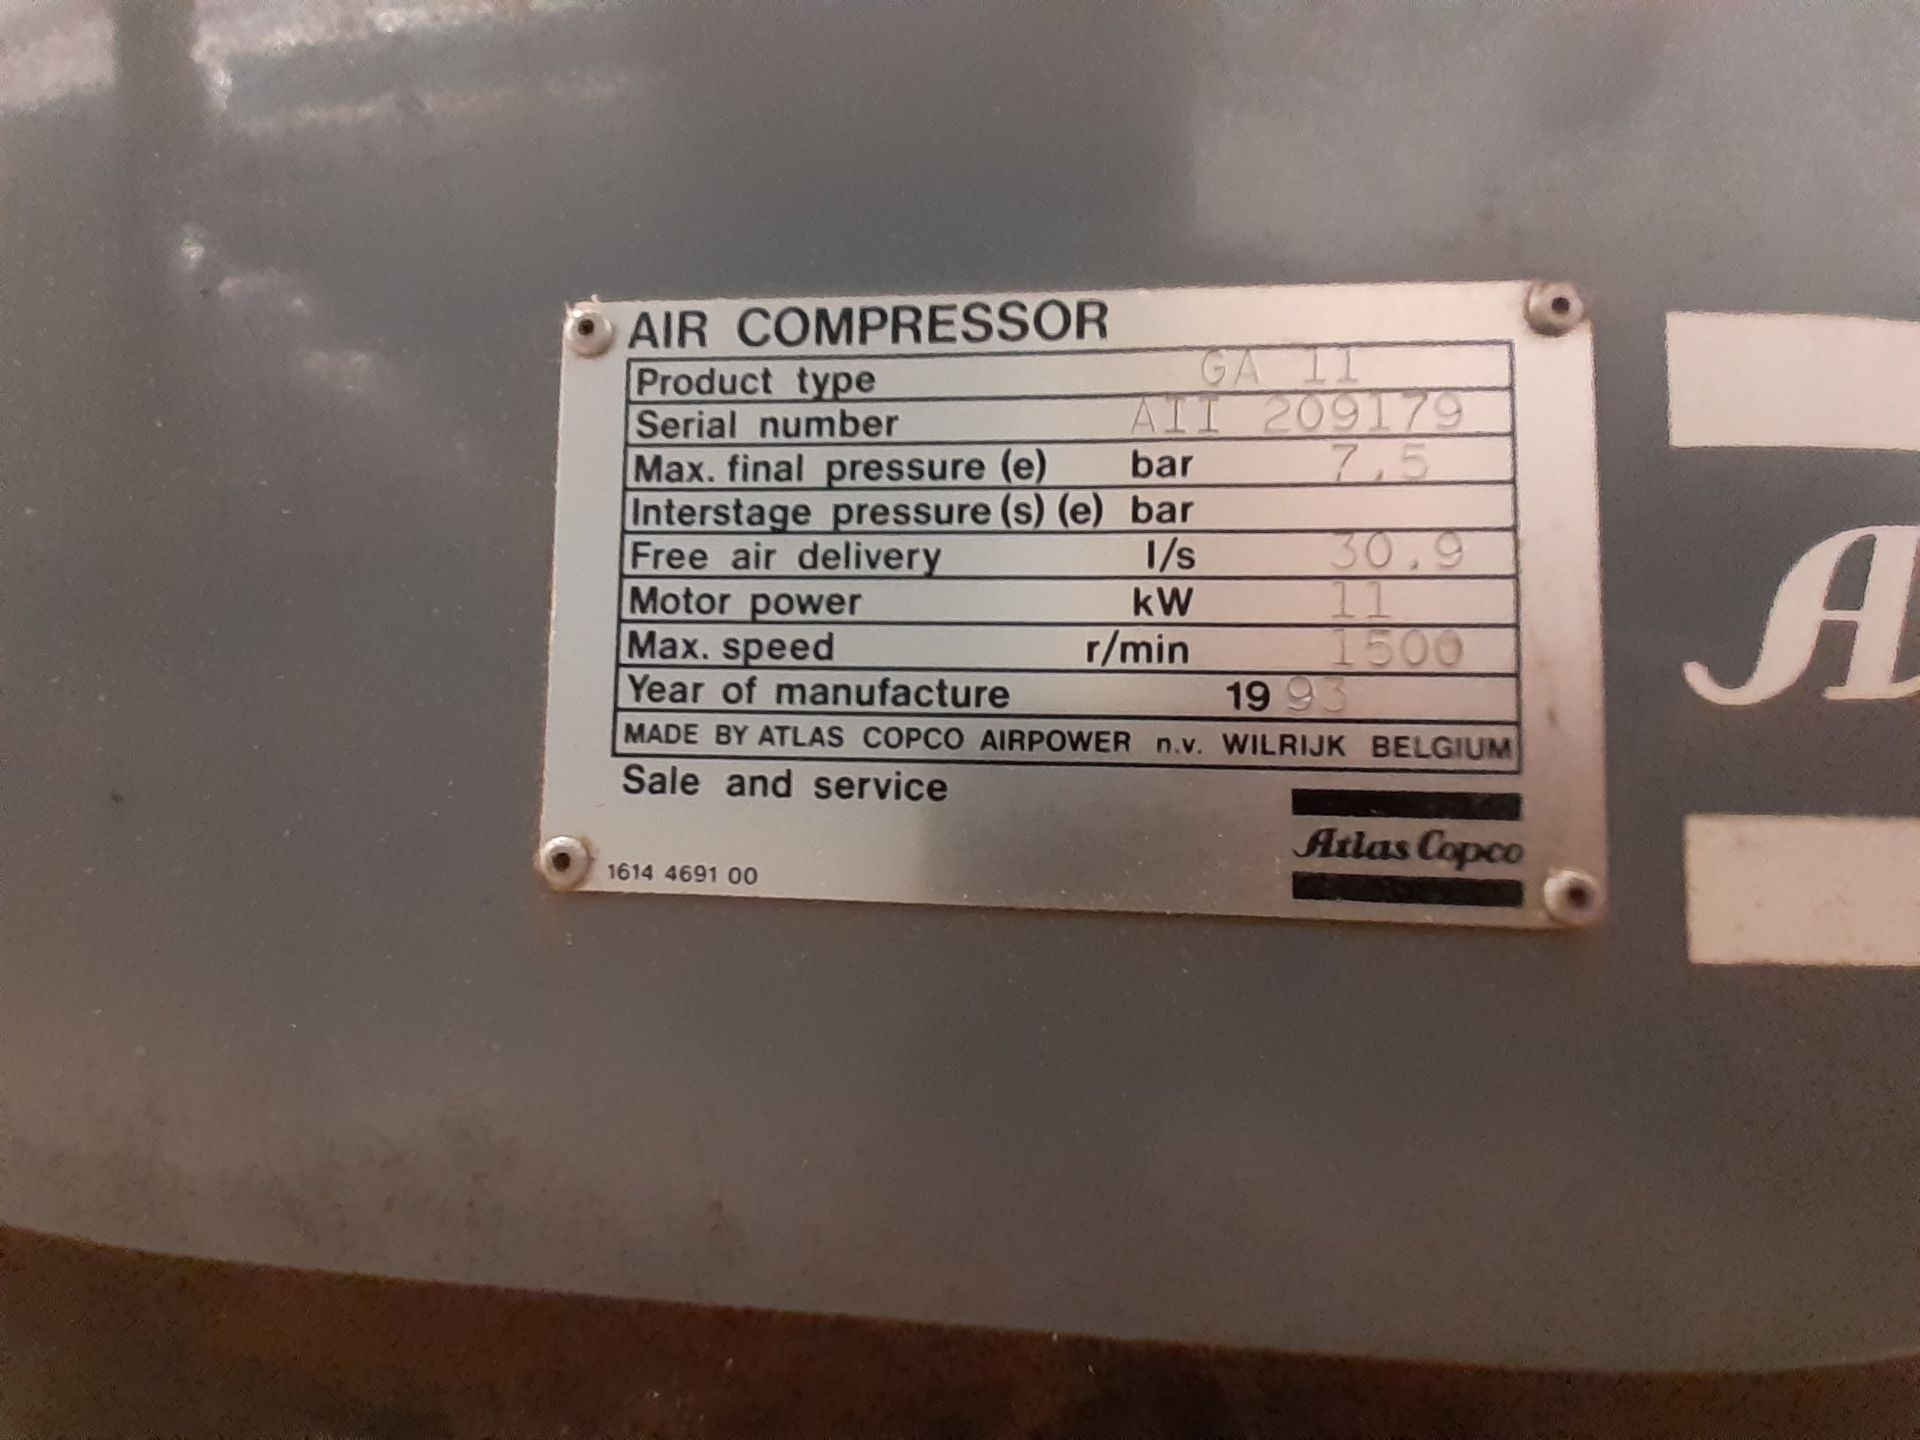 1993 Atla Copco GA11 Air Compressor with FD30 Air Dryer - Image 2 of 3